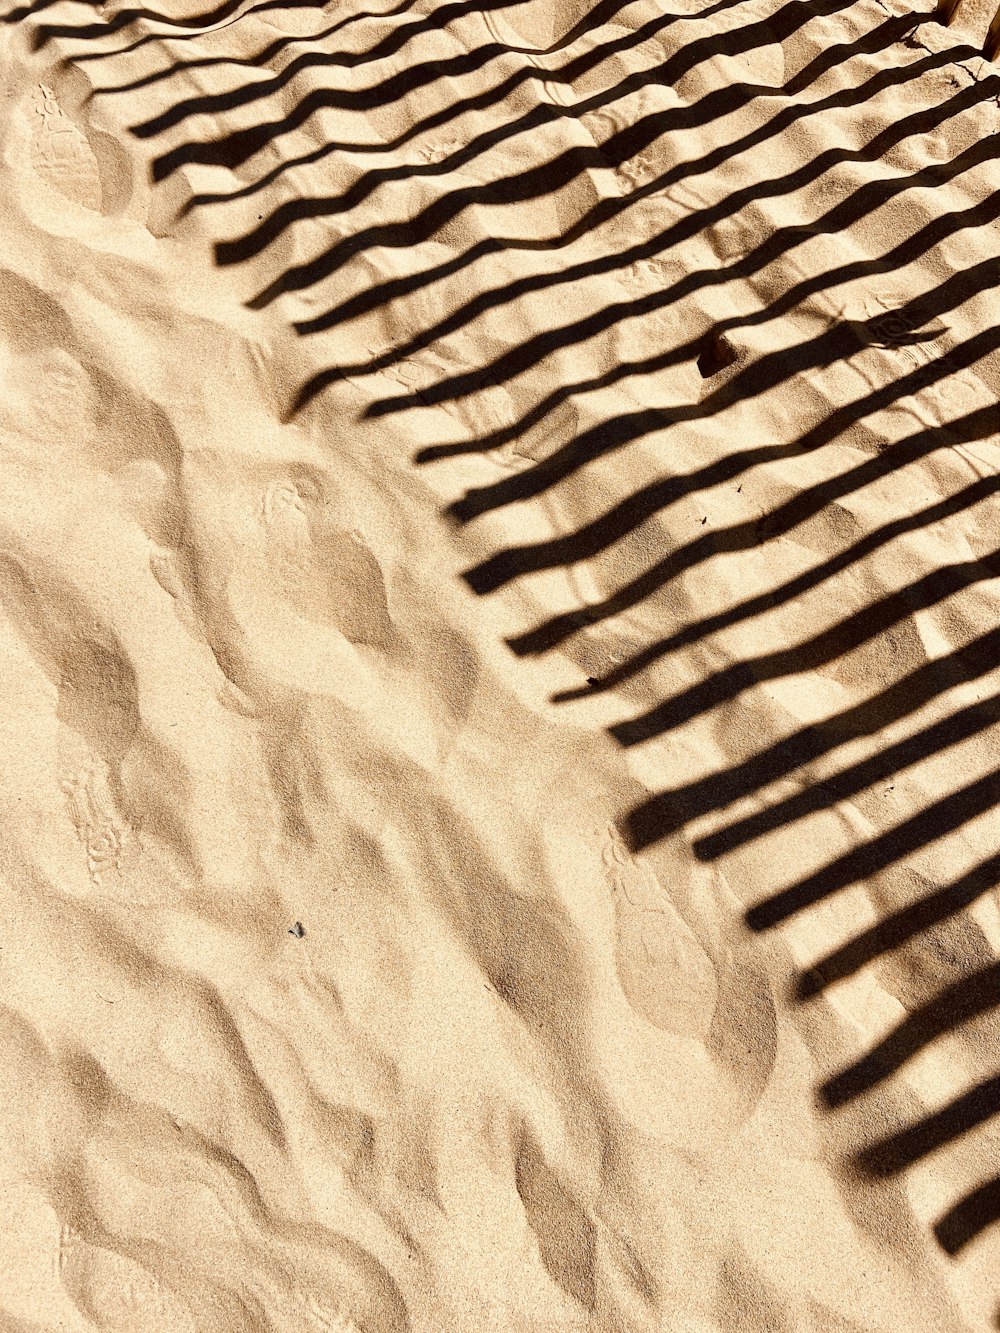 Der Schatten einer Bank an einem Sandstrand